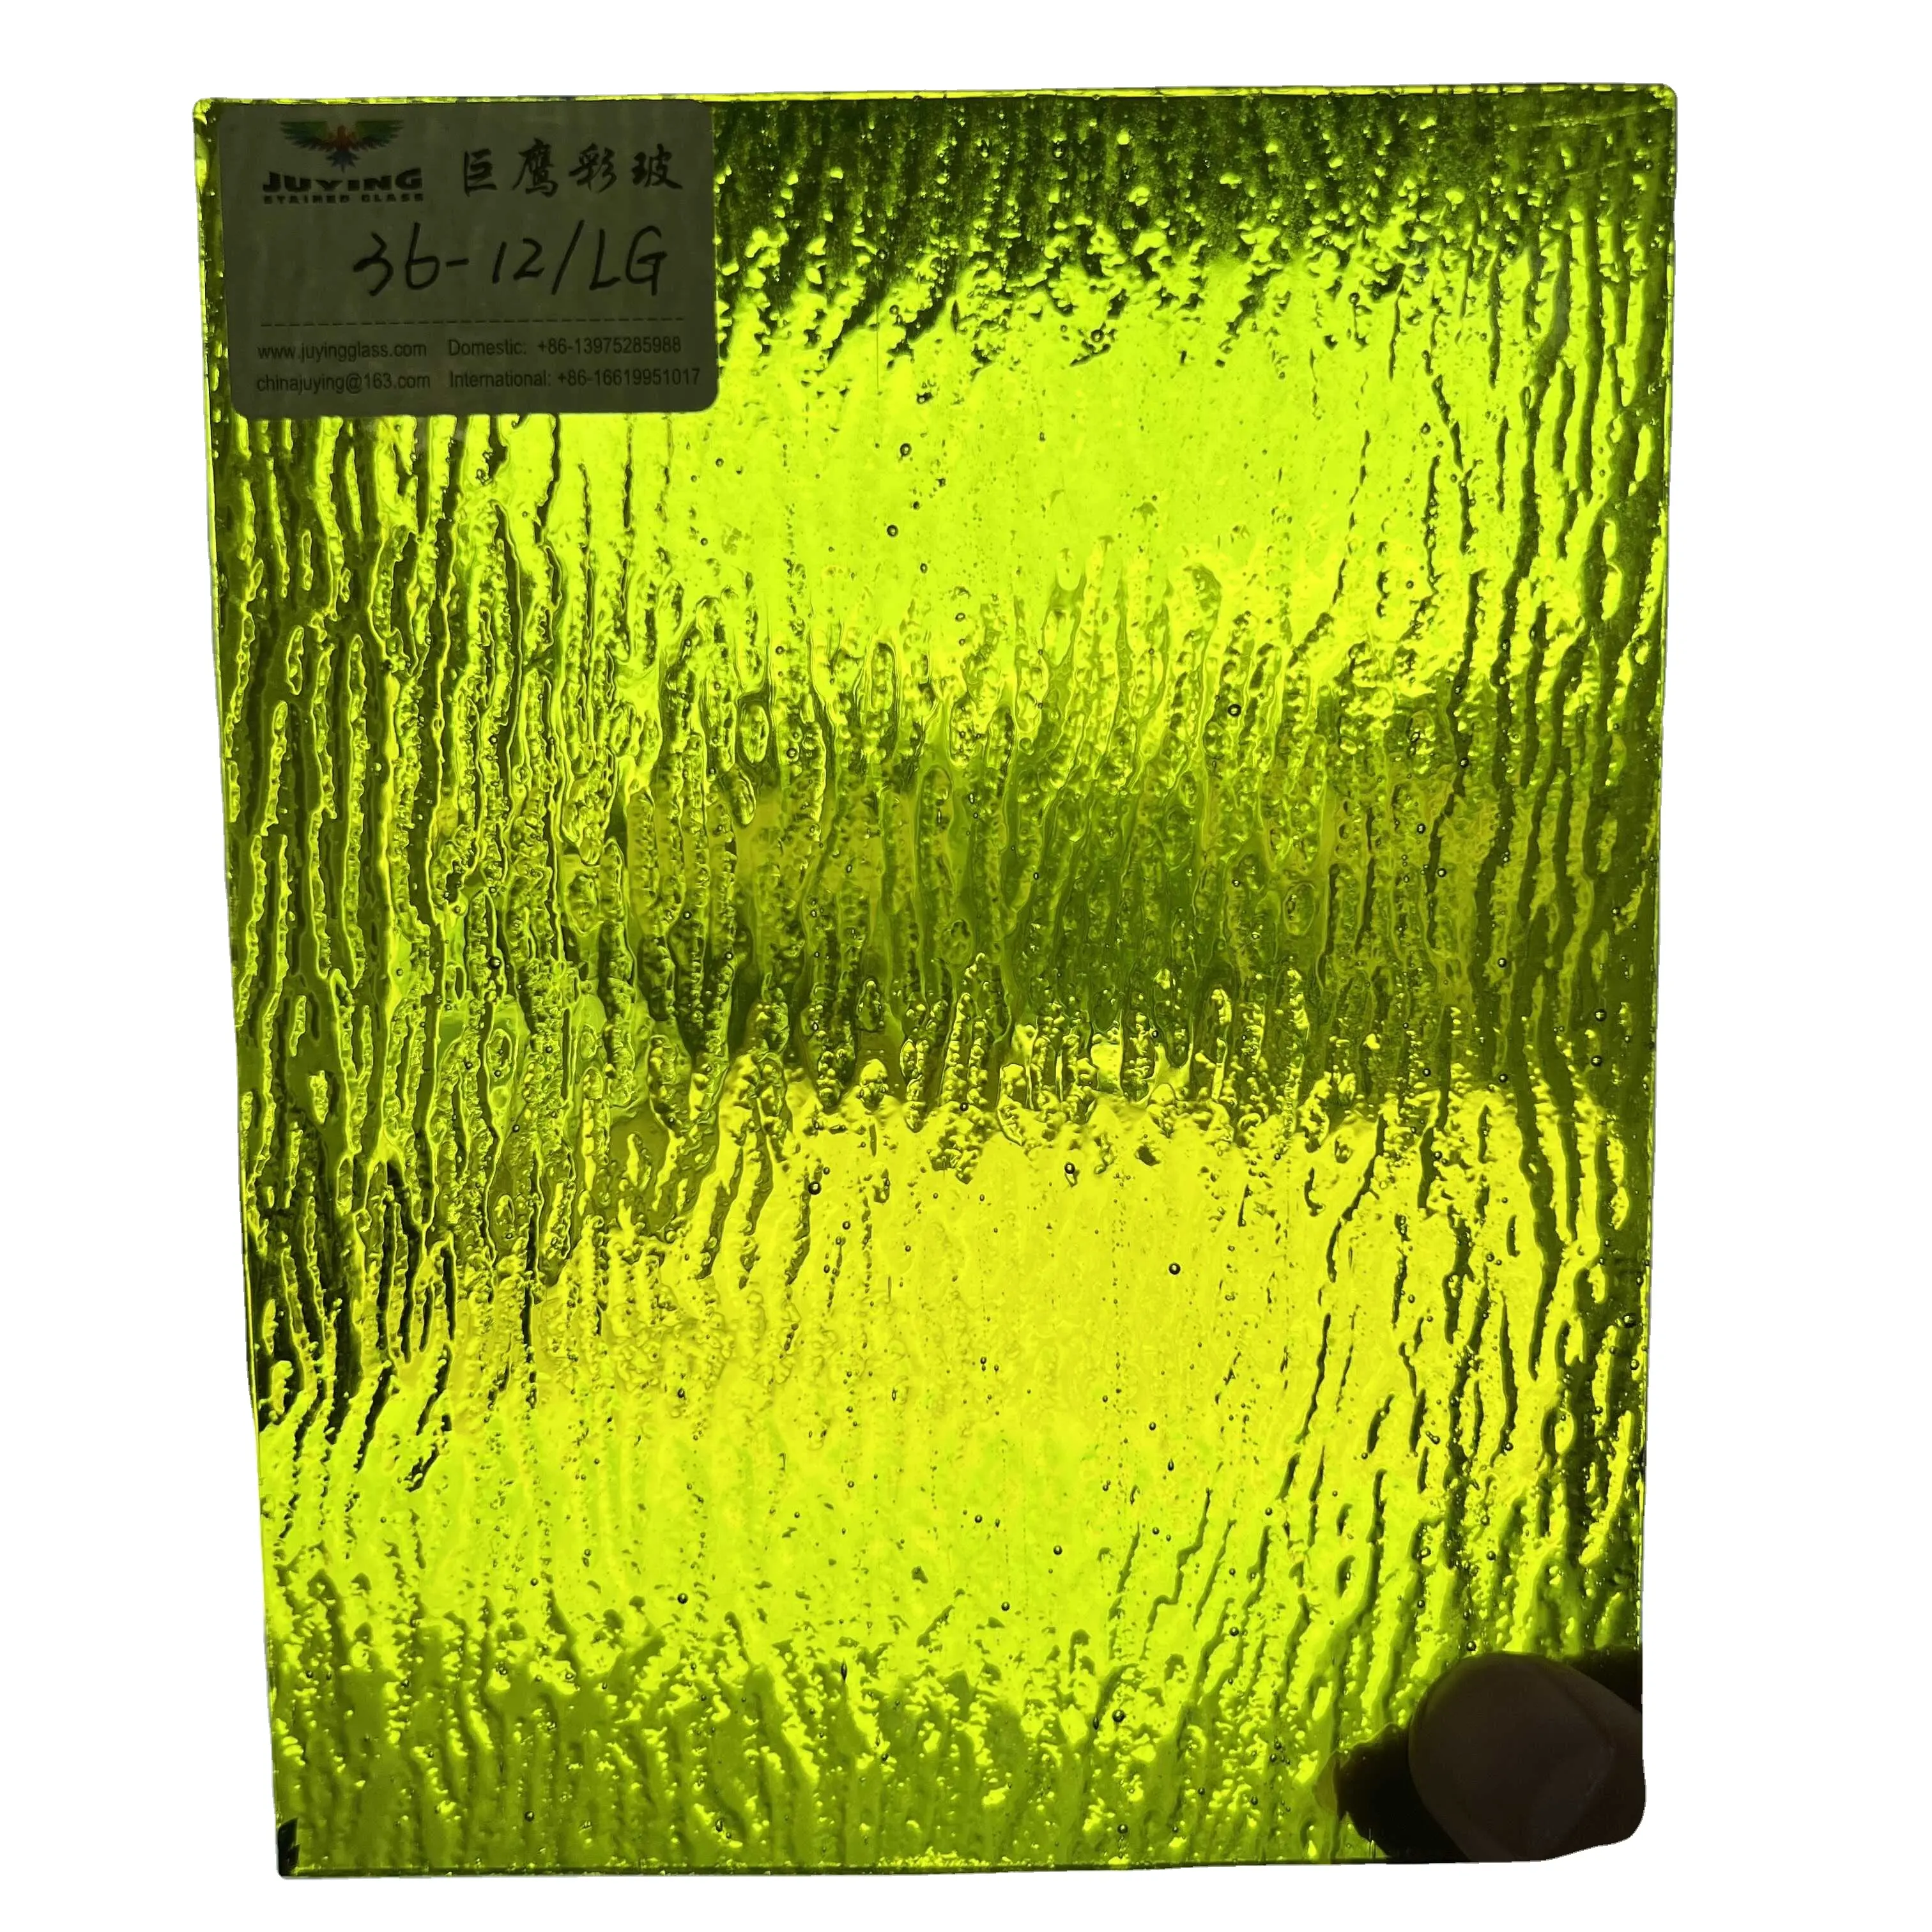 フォトセールクラフト花崗岩テクスチャアートステンドグラスライムグリーン柄ガラスパーティション用透明3mm